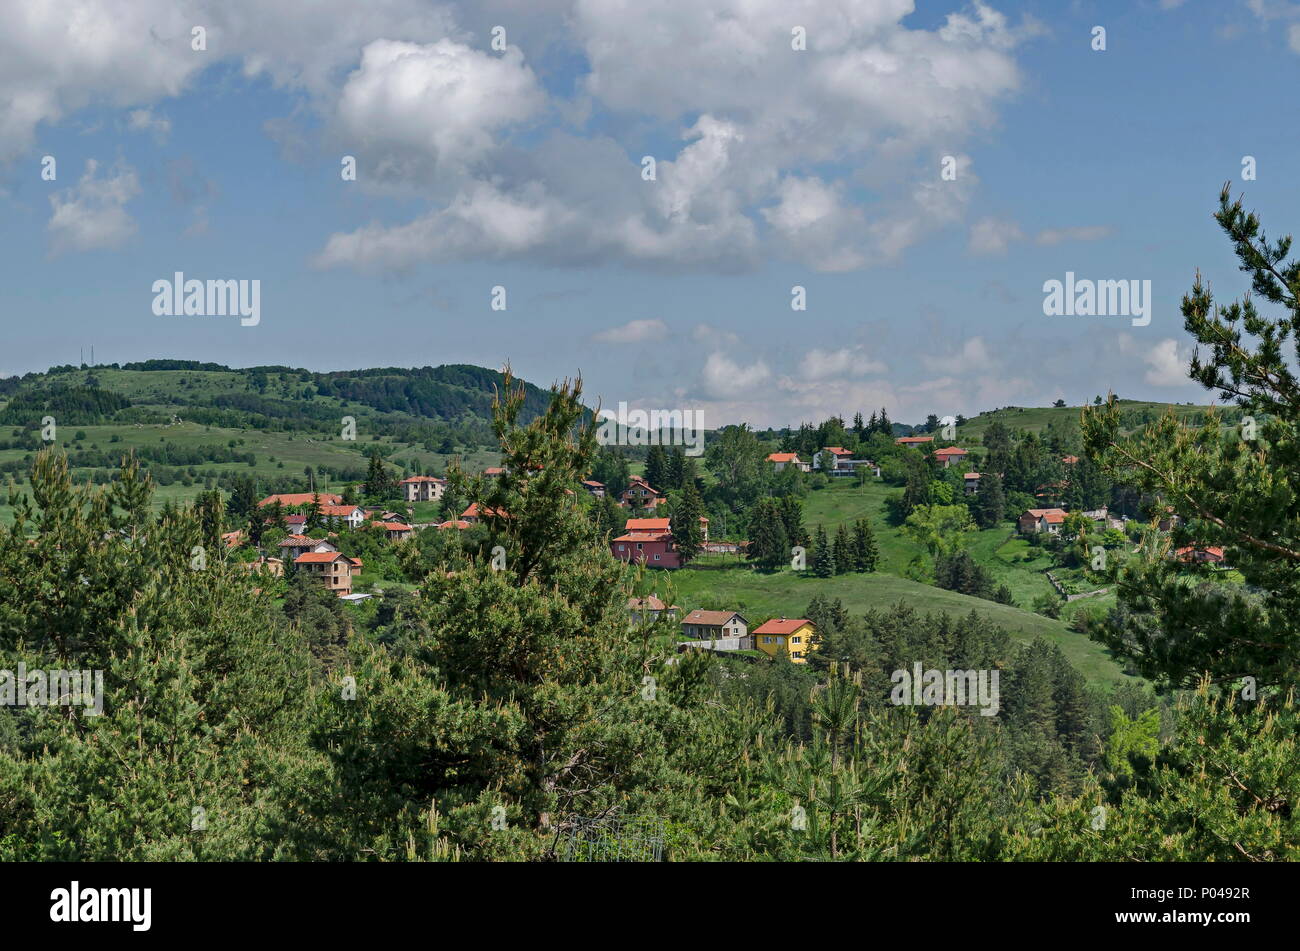 Scène de montagne printemps avec glade, forêt et le quartier résidentiel de Plana, village bulgare, la Bulgarie montagne Plana Banque D'Images